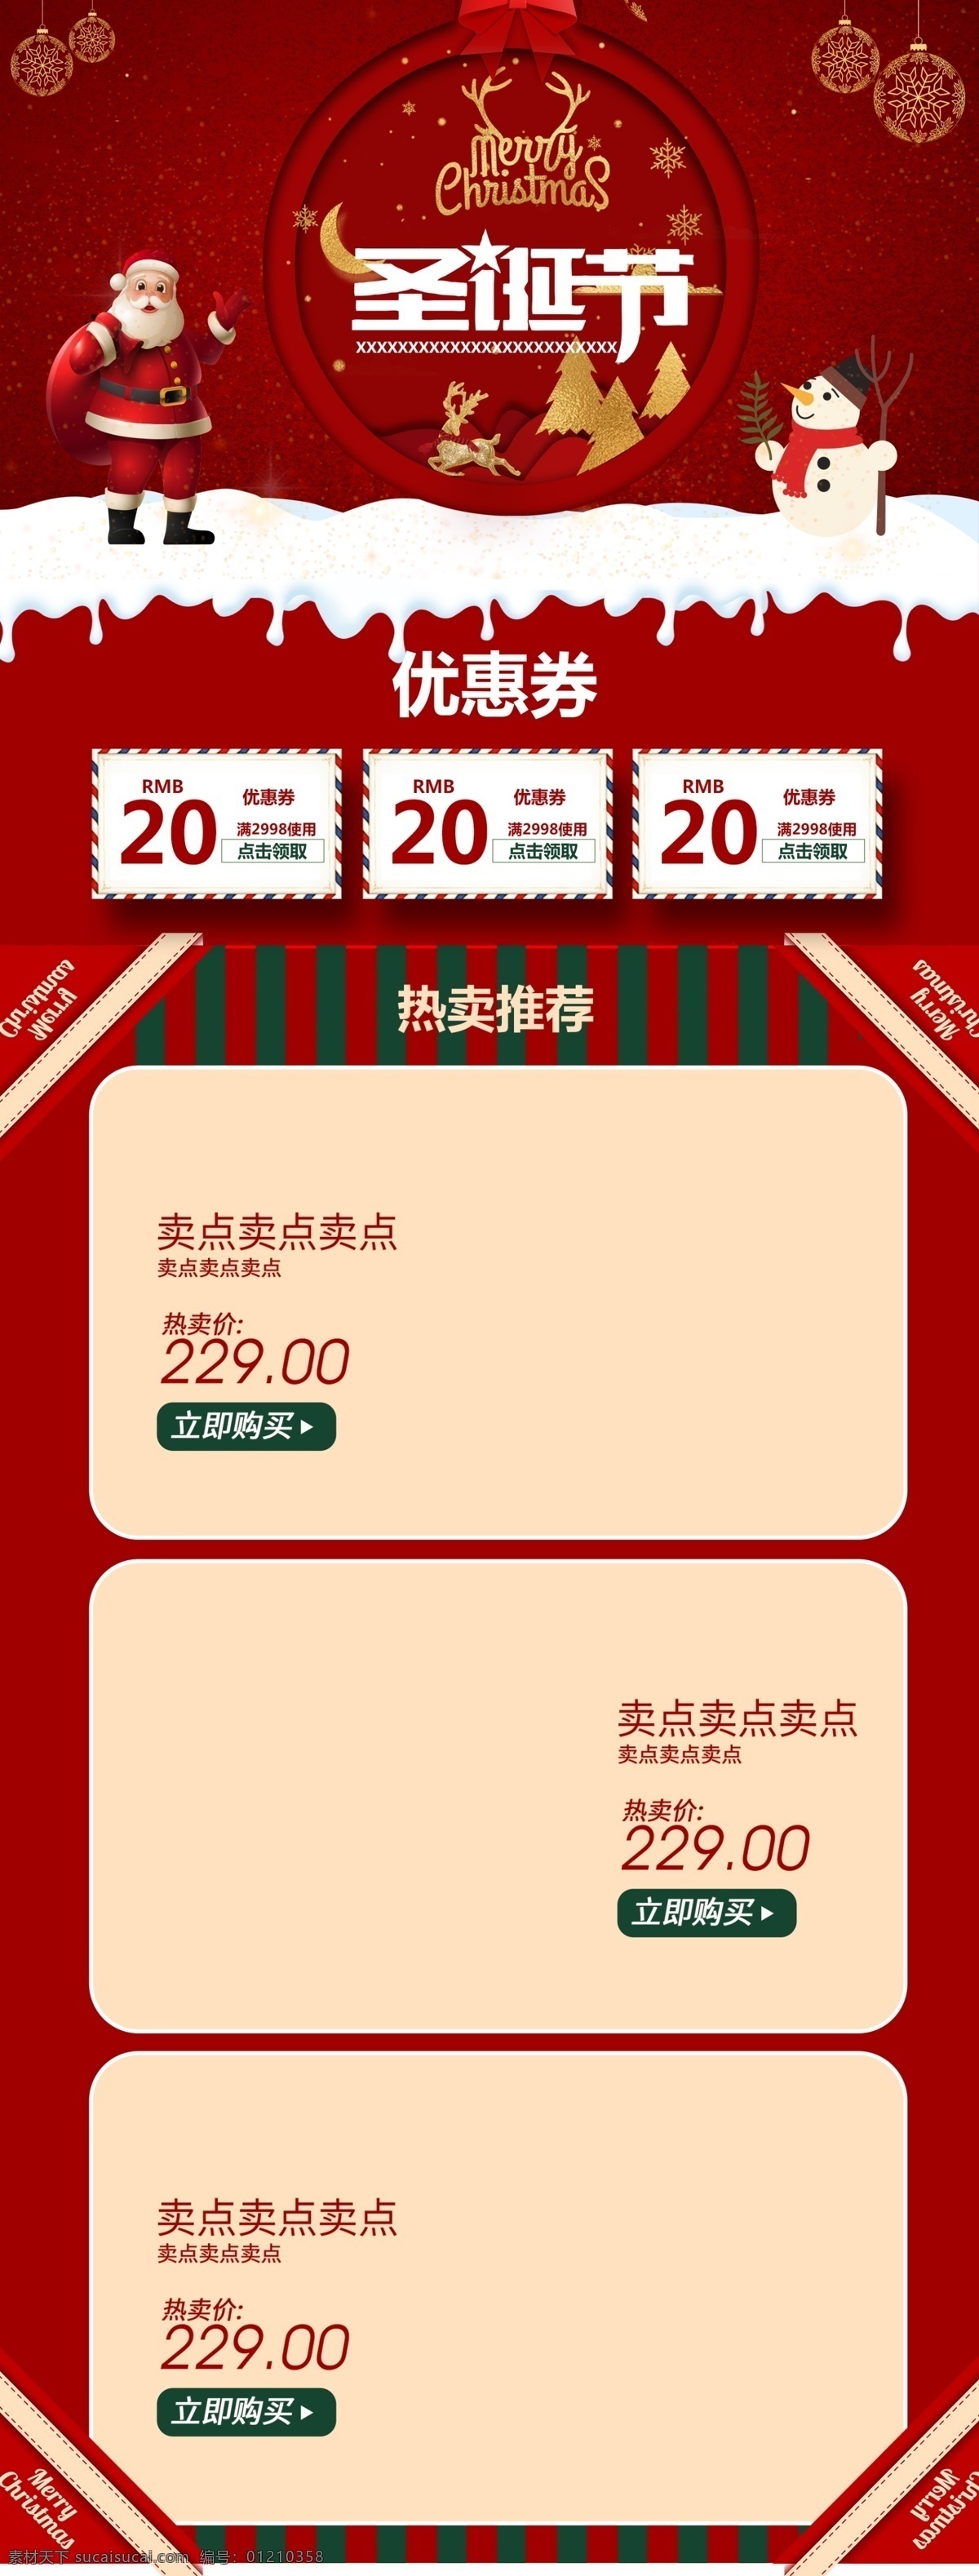 淘宝 材 素 圣诞节 首页 活动 大 促 红色 节日 促销 海报 红色节日 淘宝材素